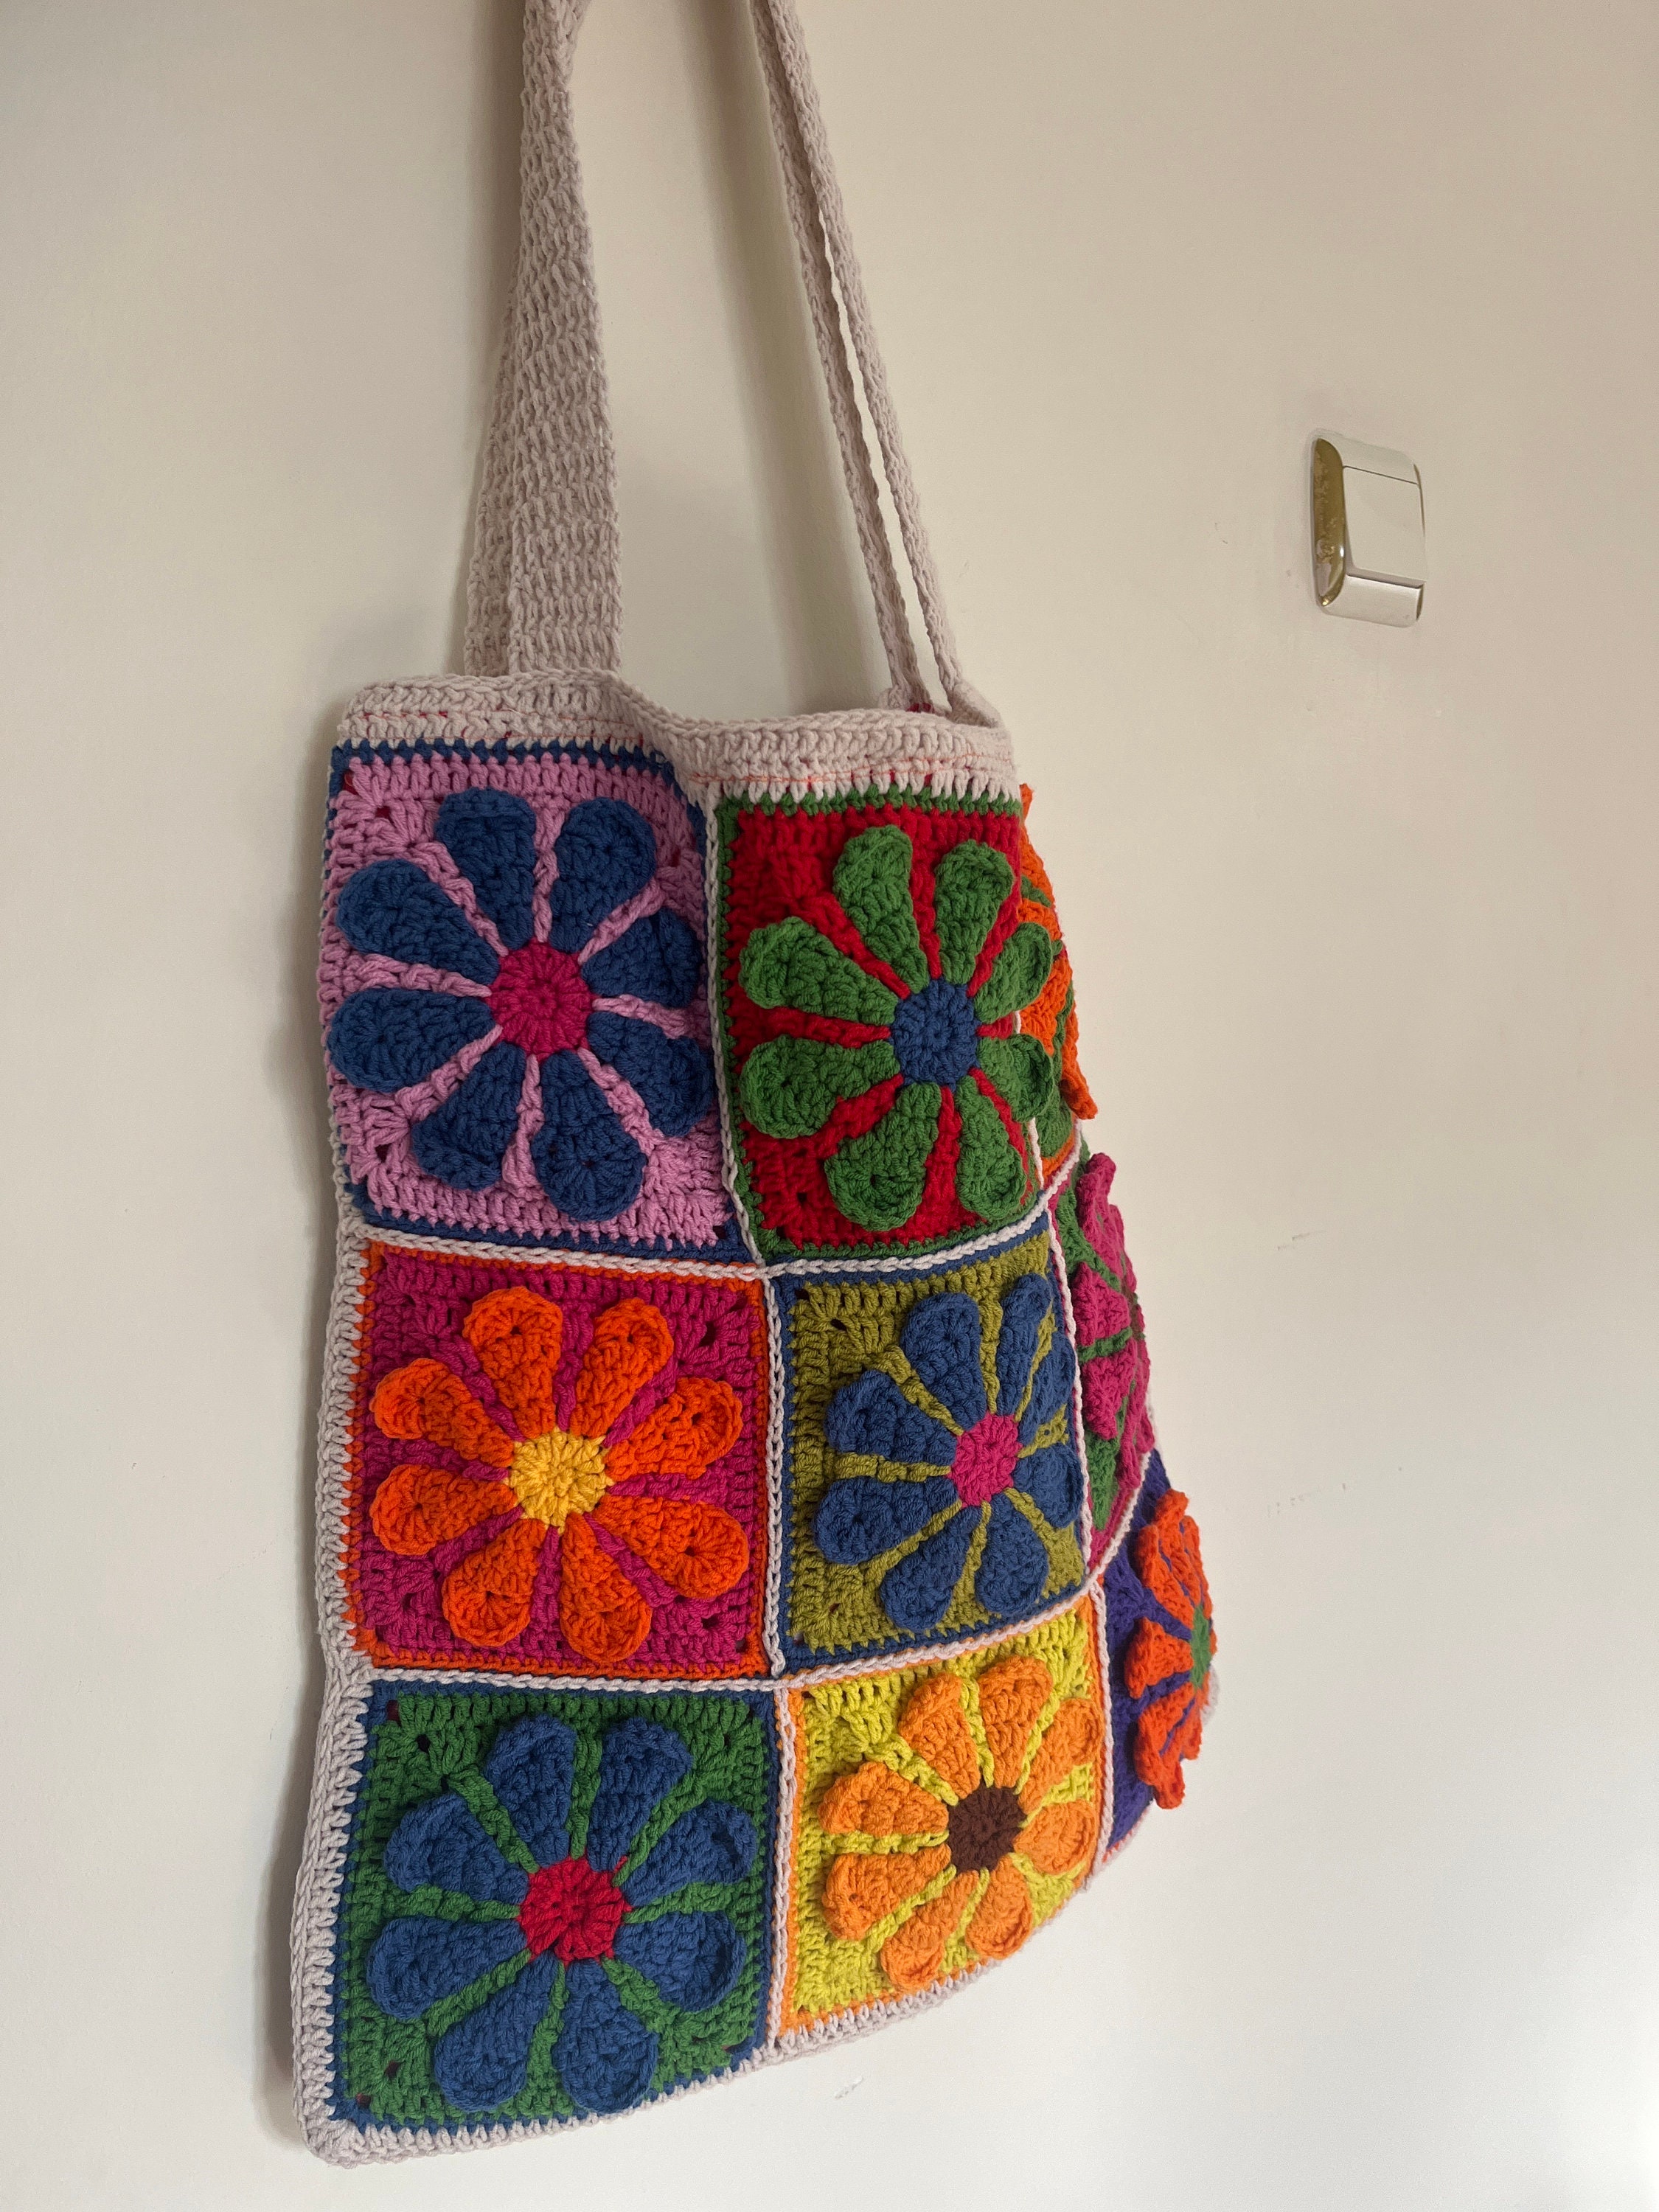 Crochet Daisy Bag,flower Tote Bag, Knit Flower Colorful Bag, Crochet ...